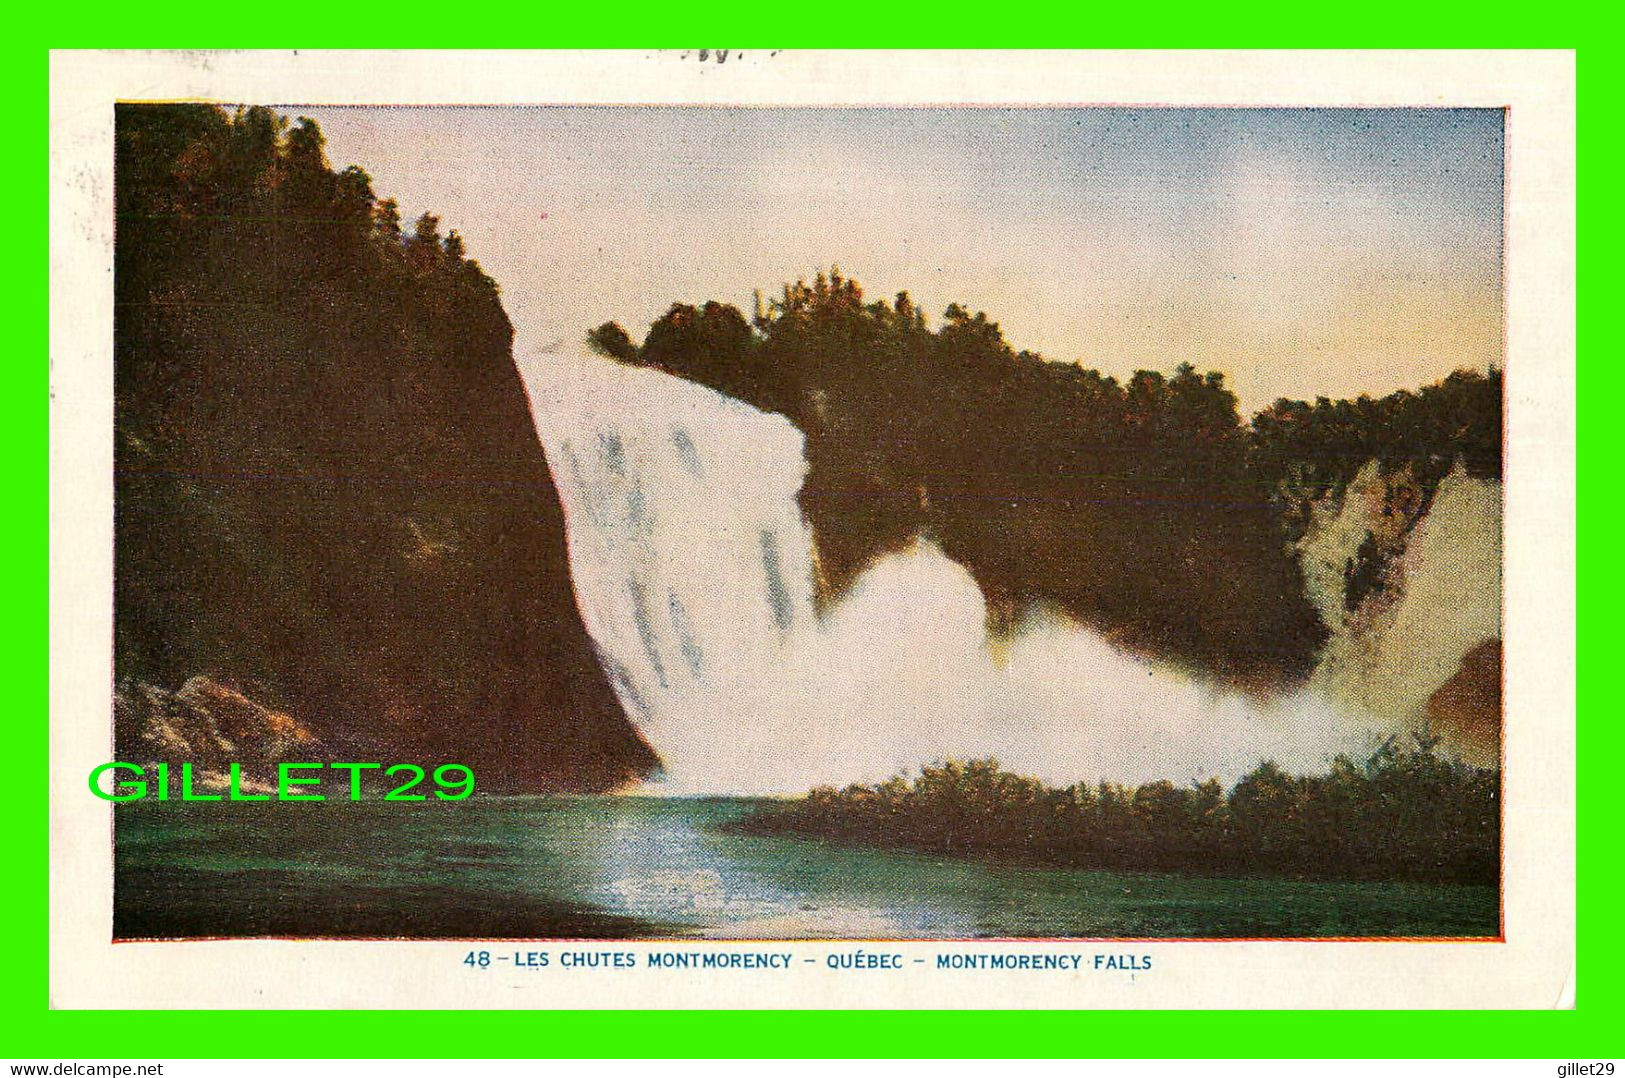 LES CHUTES MONTMORENCY, QUÉBEC - LORENZO AUDET ENR. ÉDITEUR No 48 - MONTMORENCY FALLS - CIRCULÉE EN 1956 - - Cataratas De Montmorency